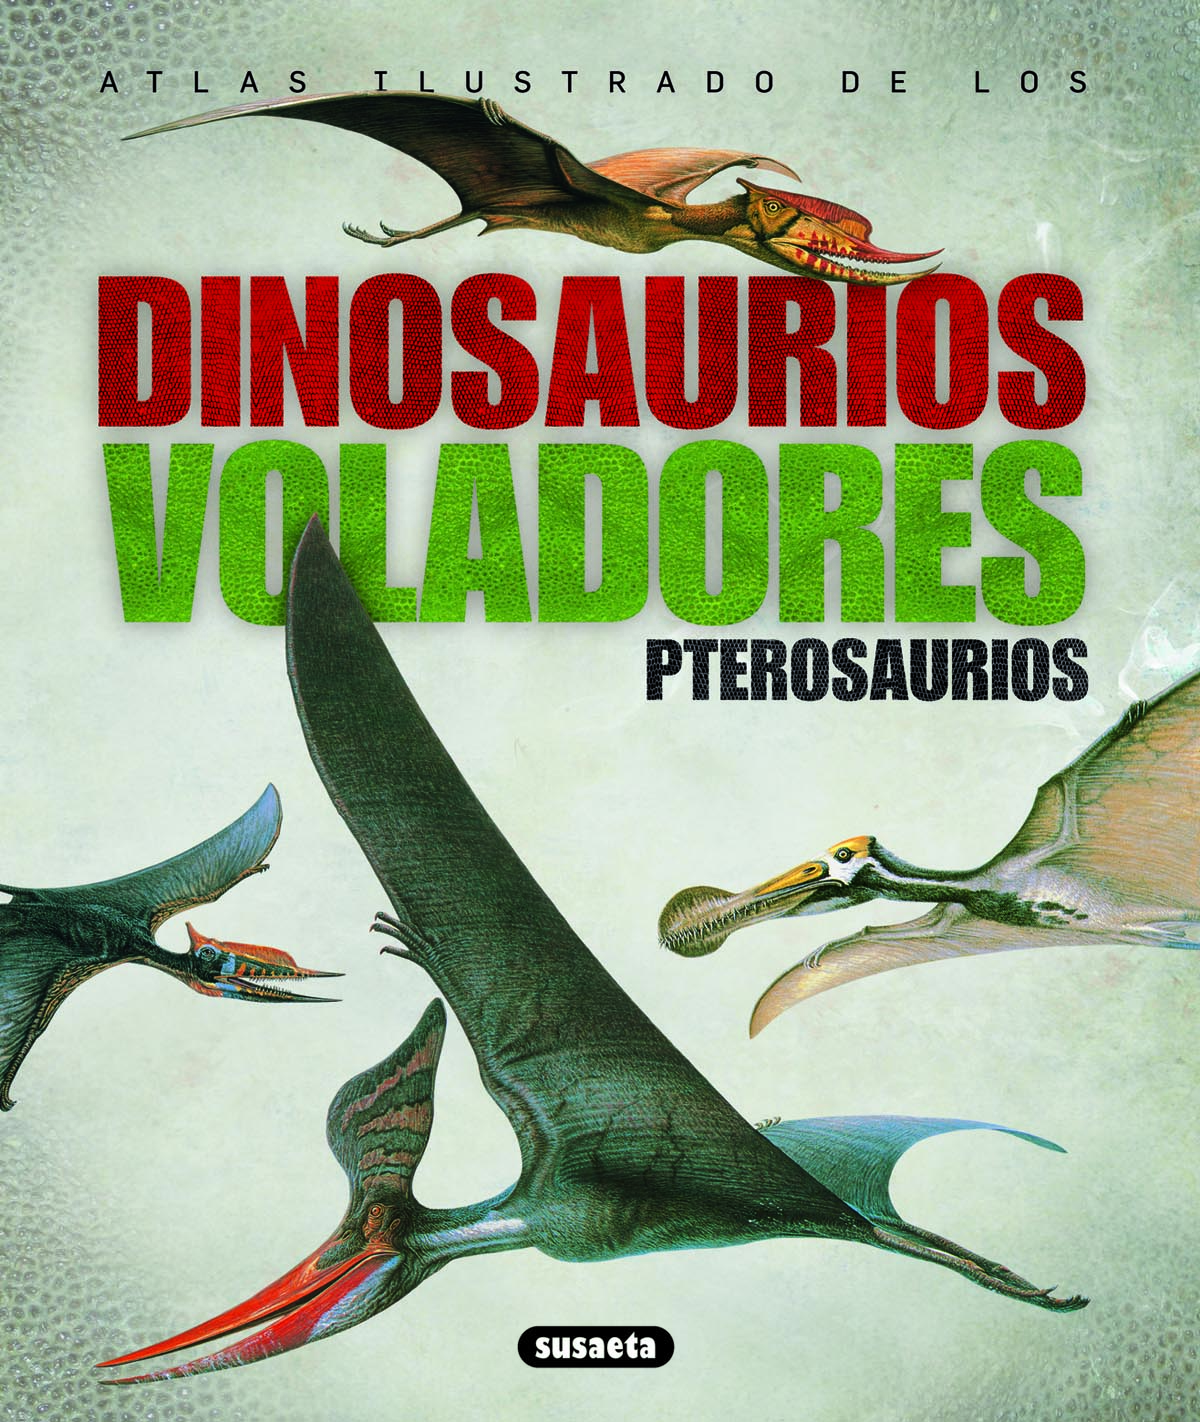 Pterosaurios